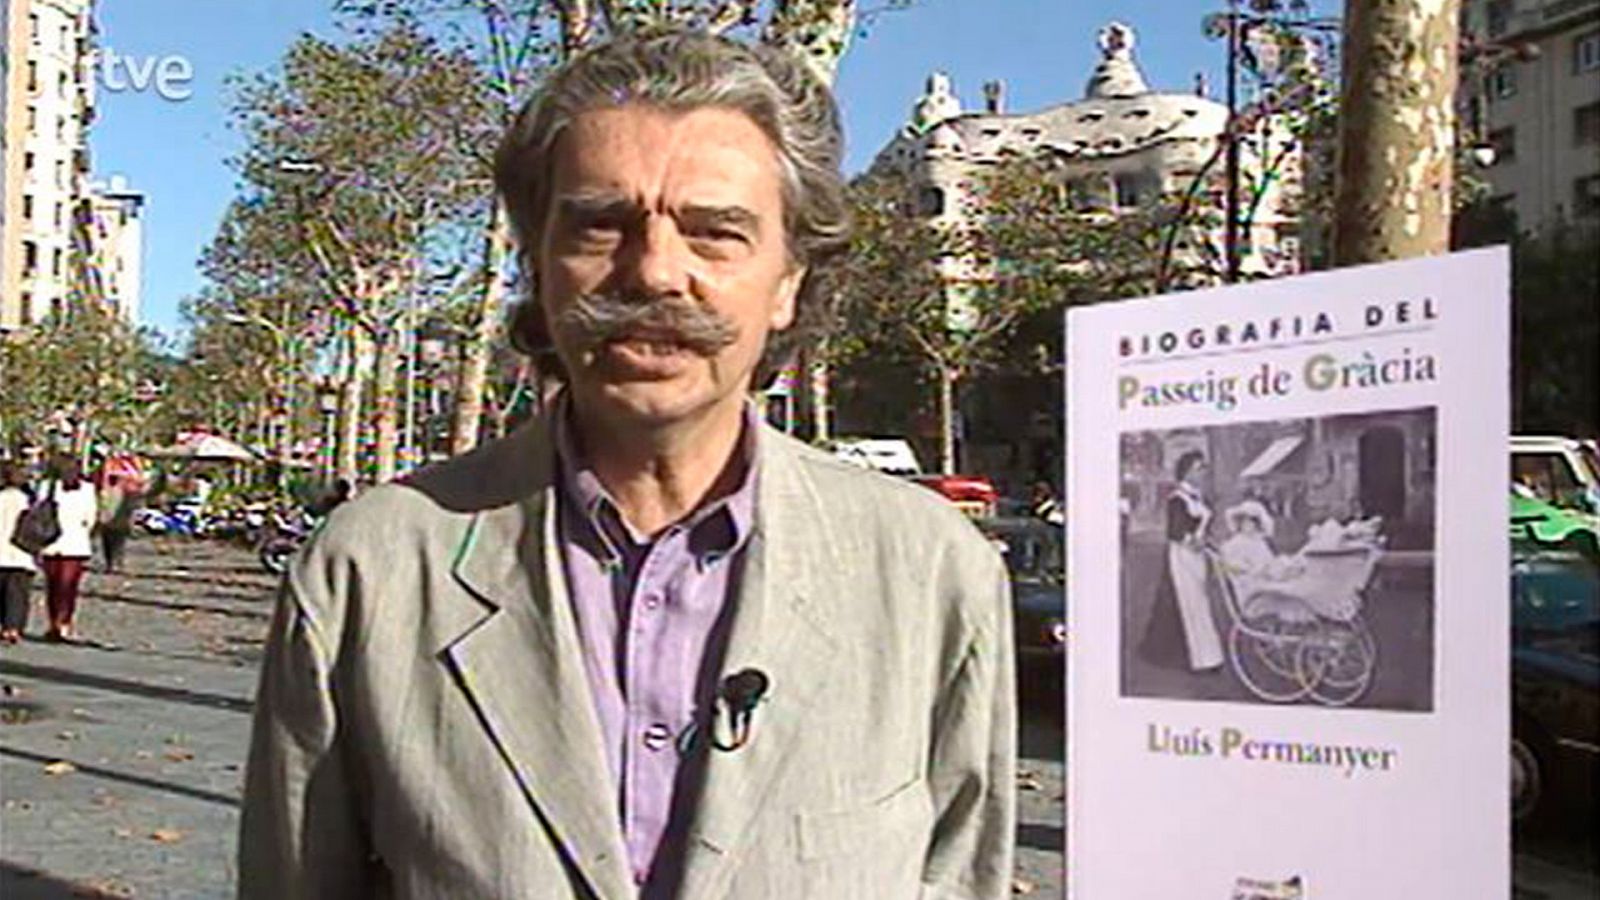 Arxiu TVE Catalunya - L'Odissea - Llibres de Sempronio i Lluís Permanyer sobre el passeig de Gràcia